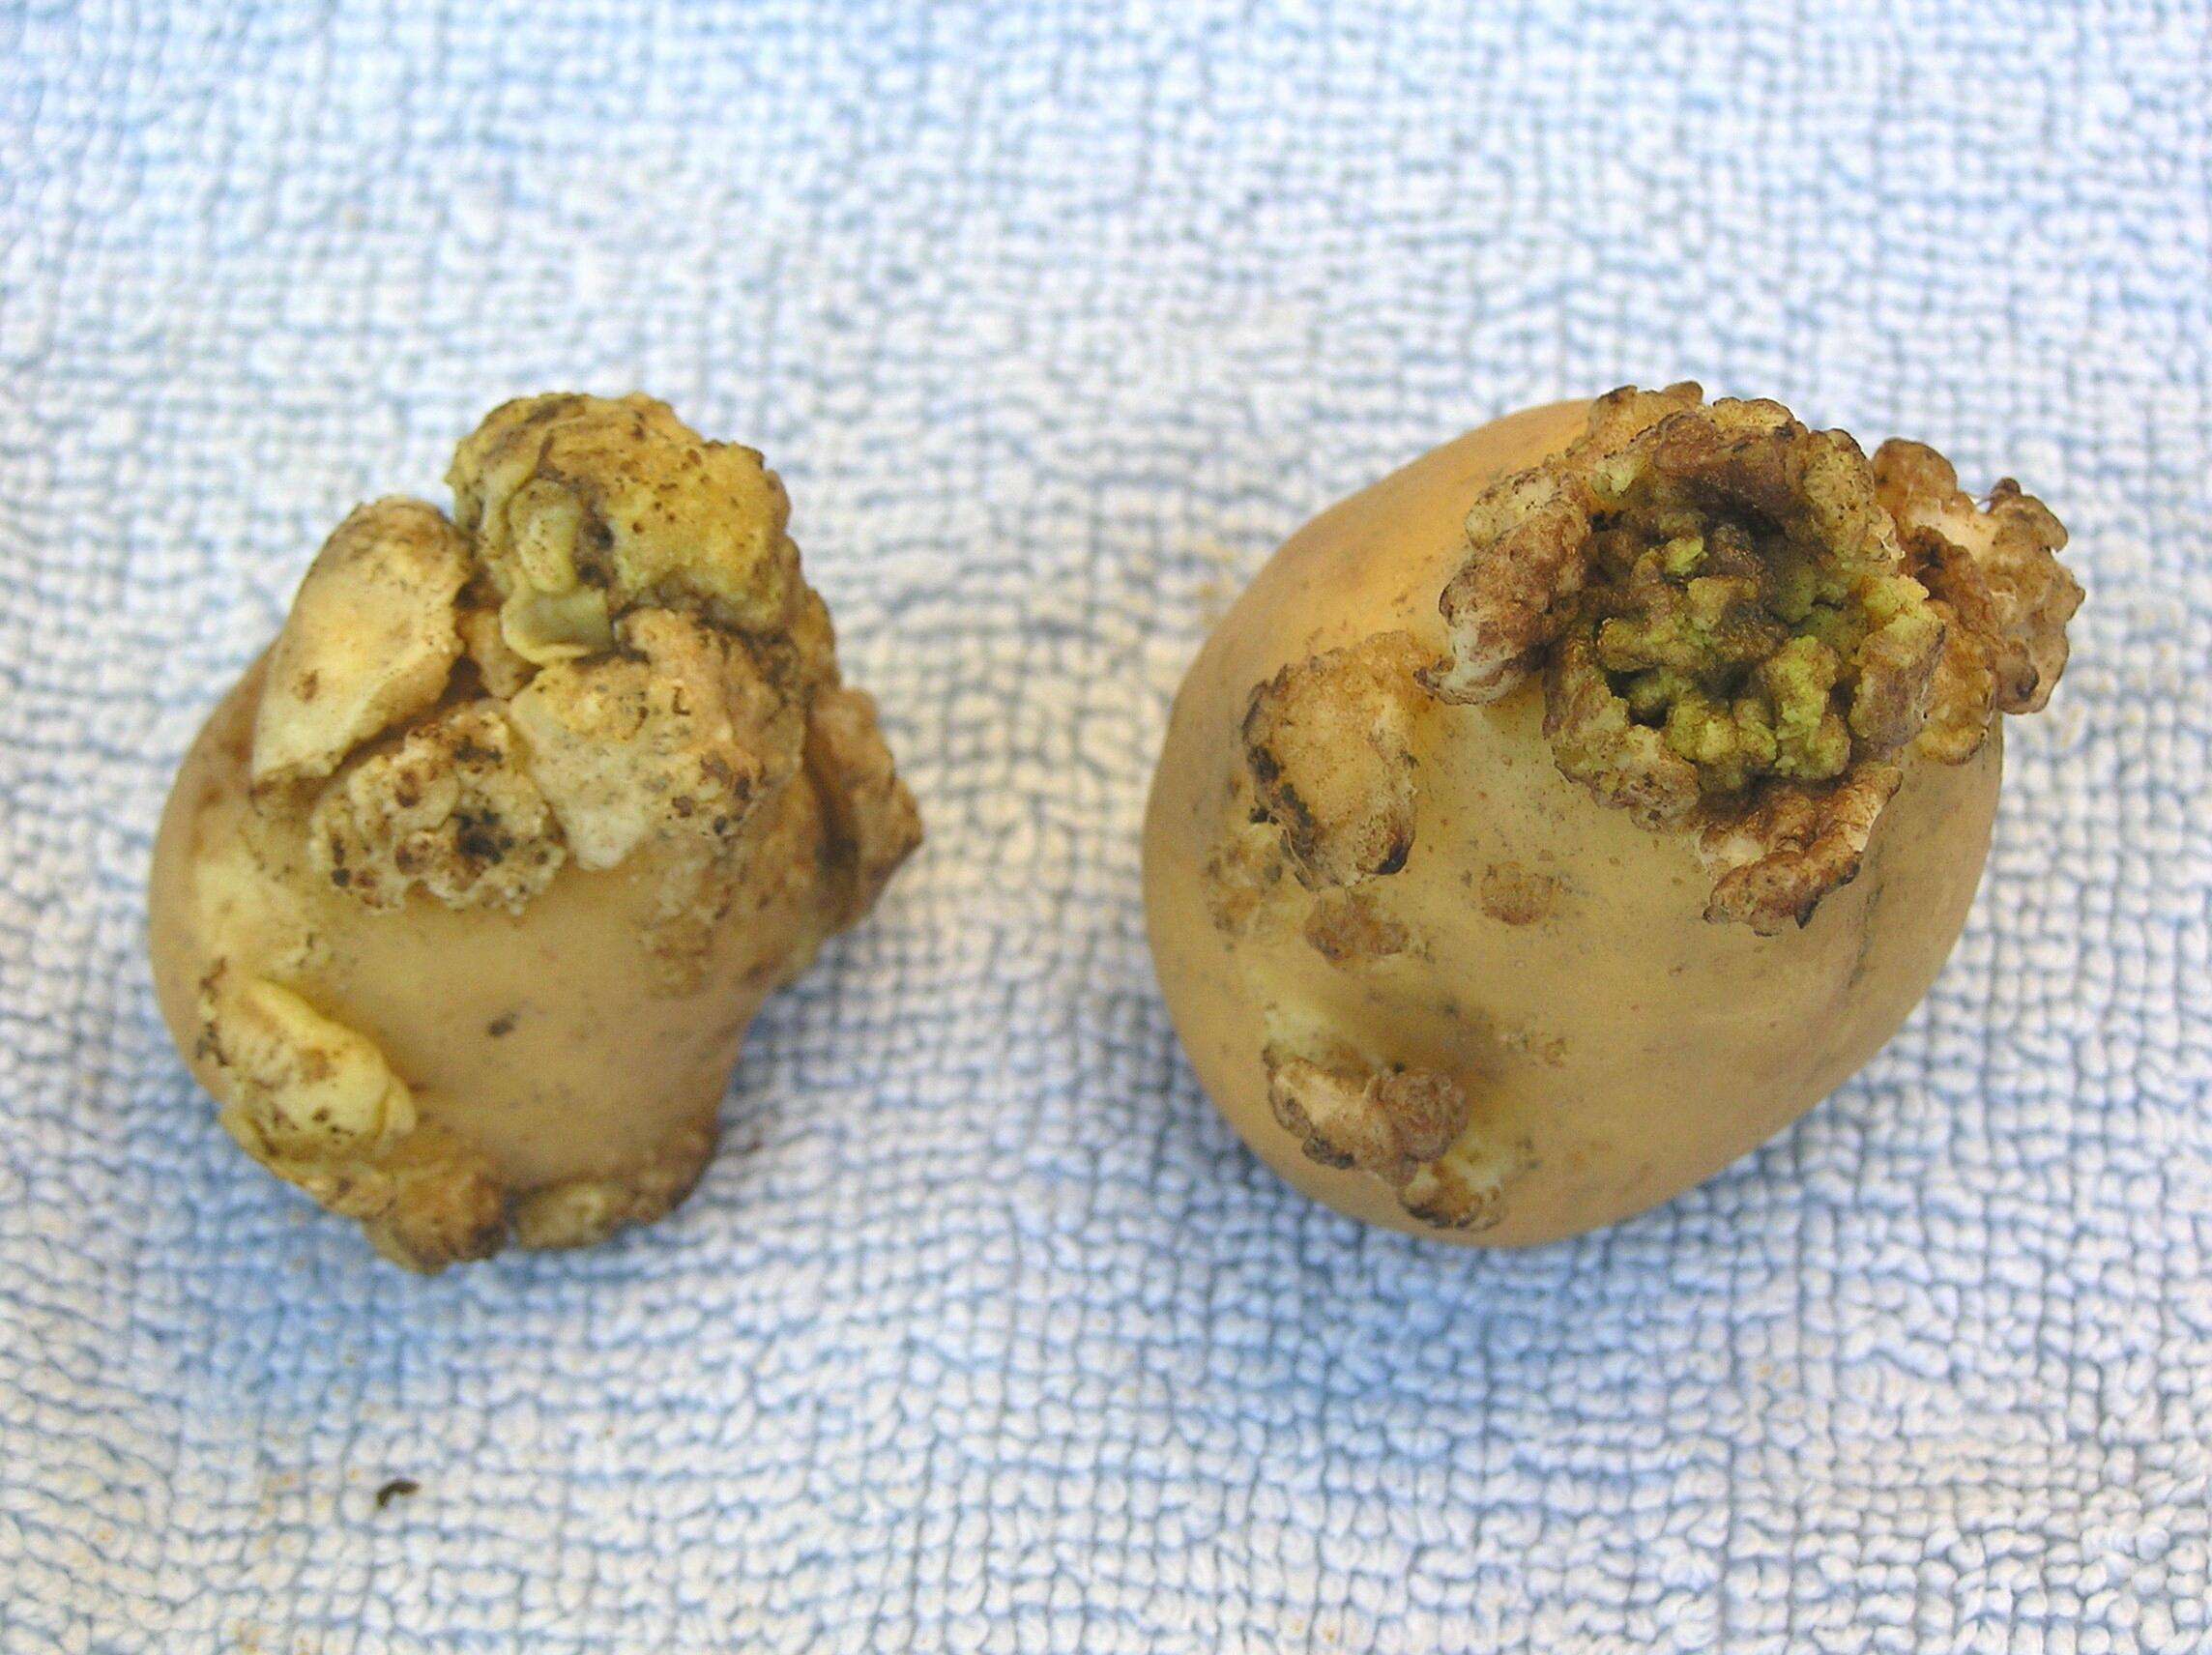 tubers on top of brown potato